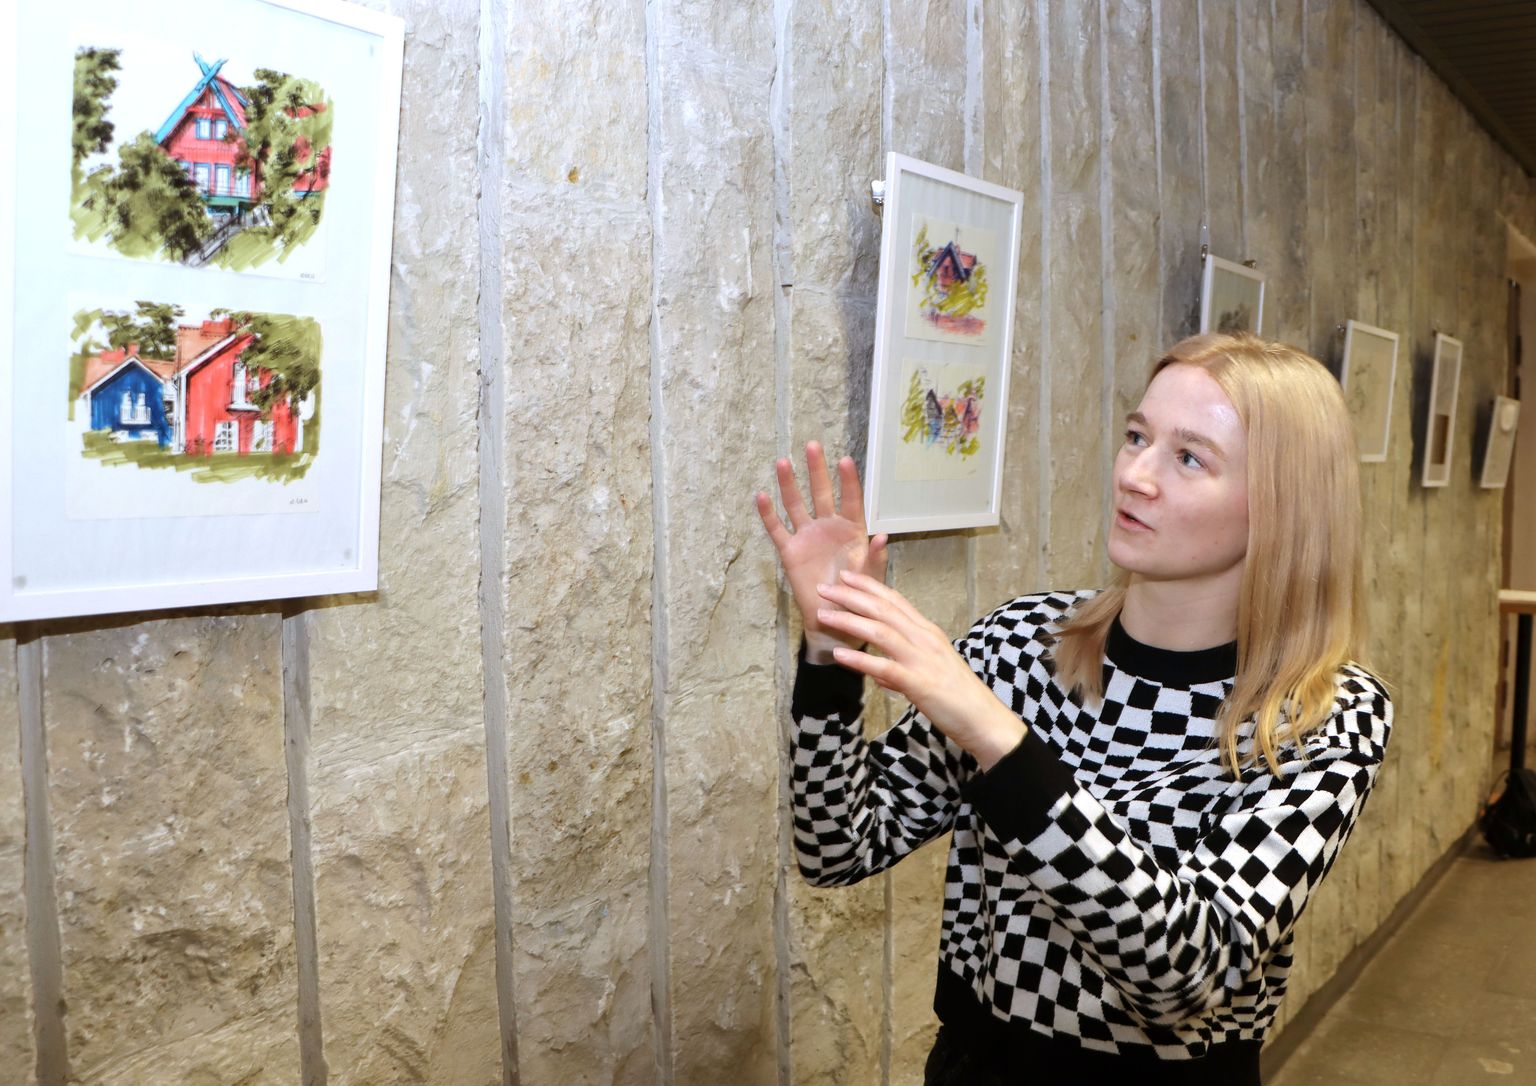 Leedus väikeses Nida asulas visandas Veronika Pobežimova värvikirevaid maju ja tänavaid.